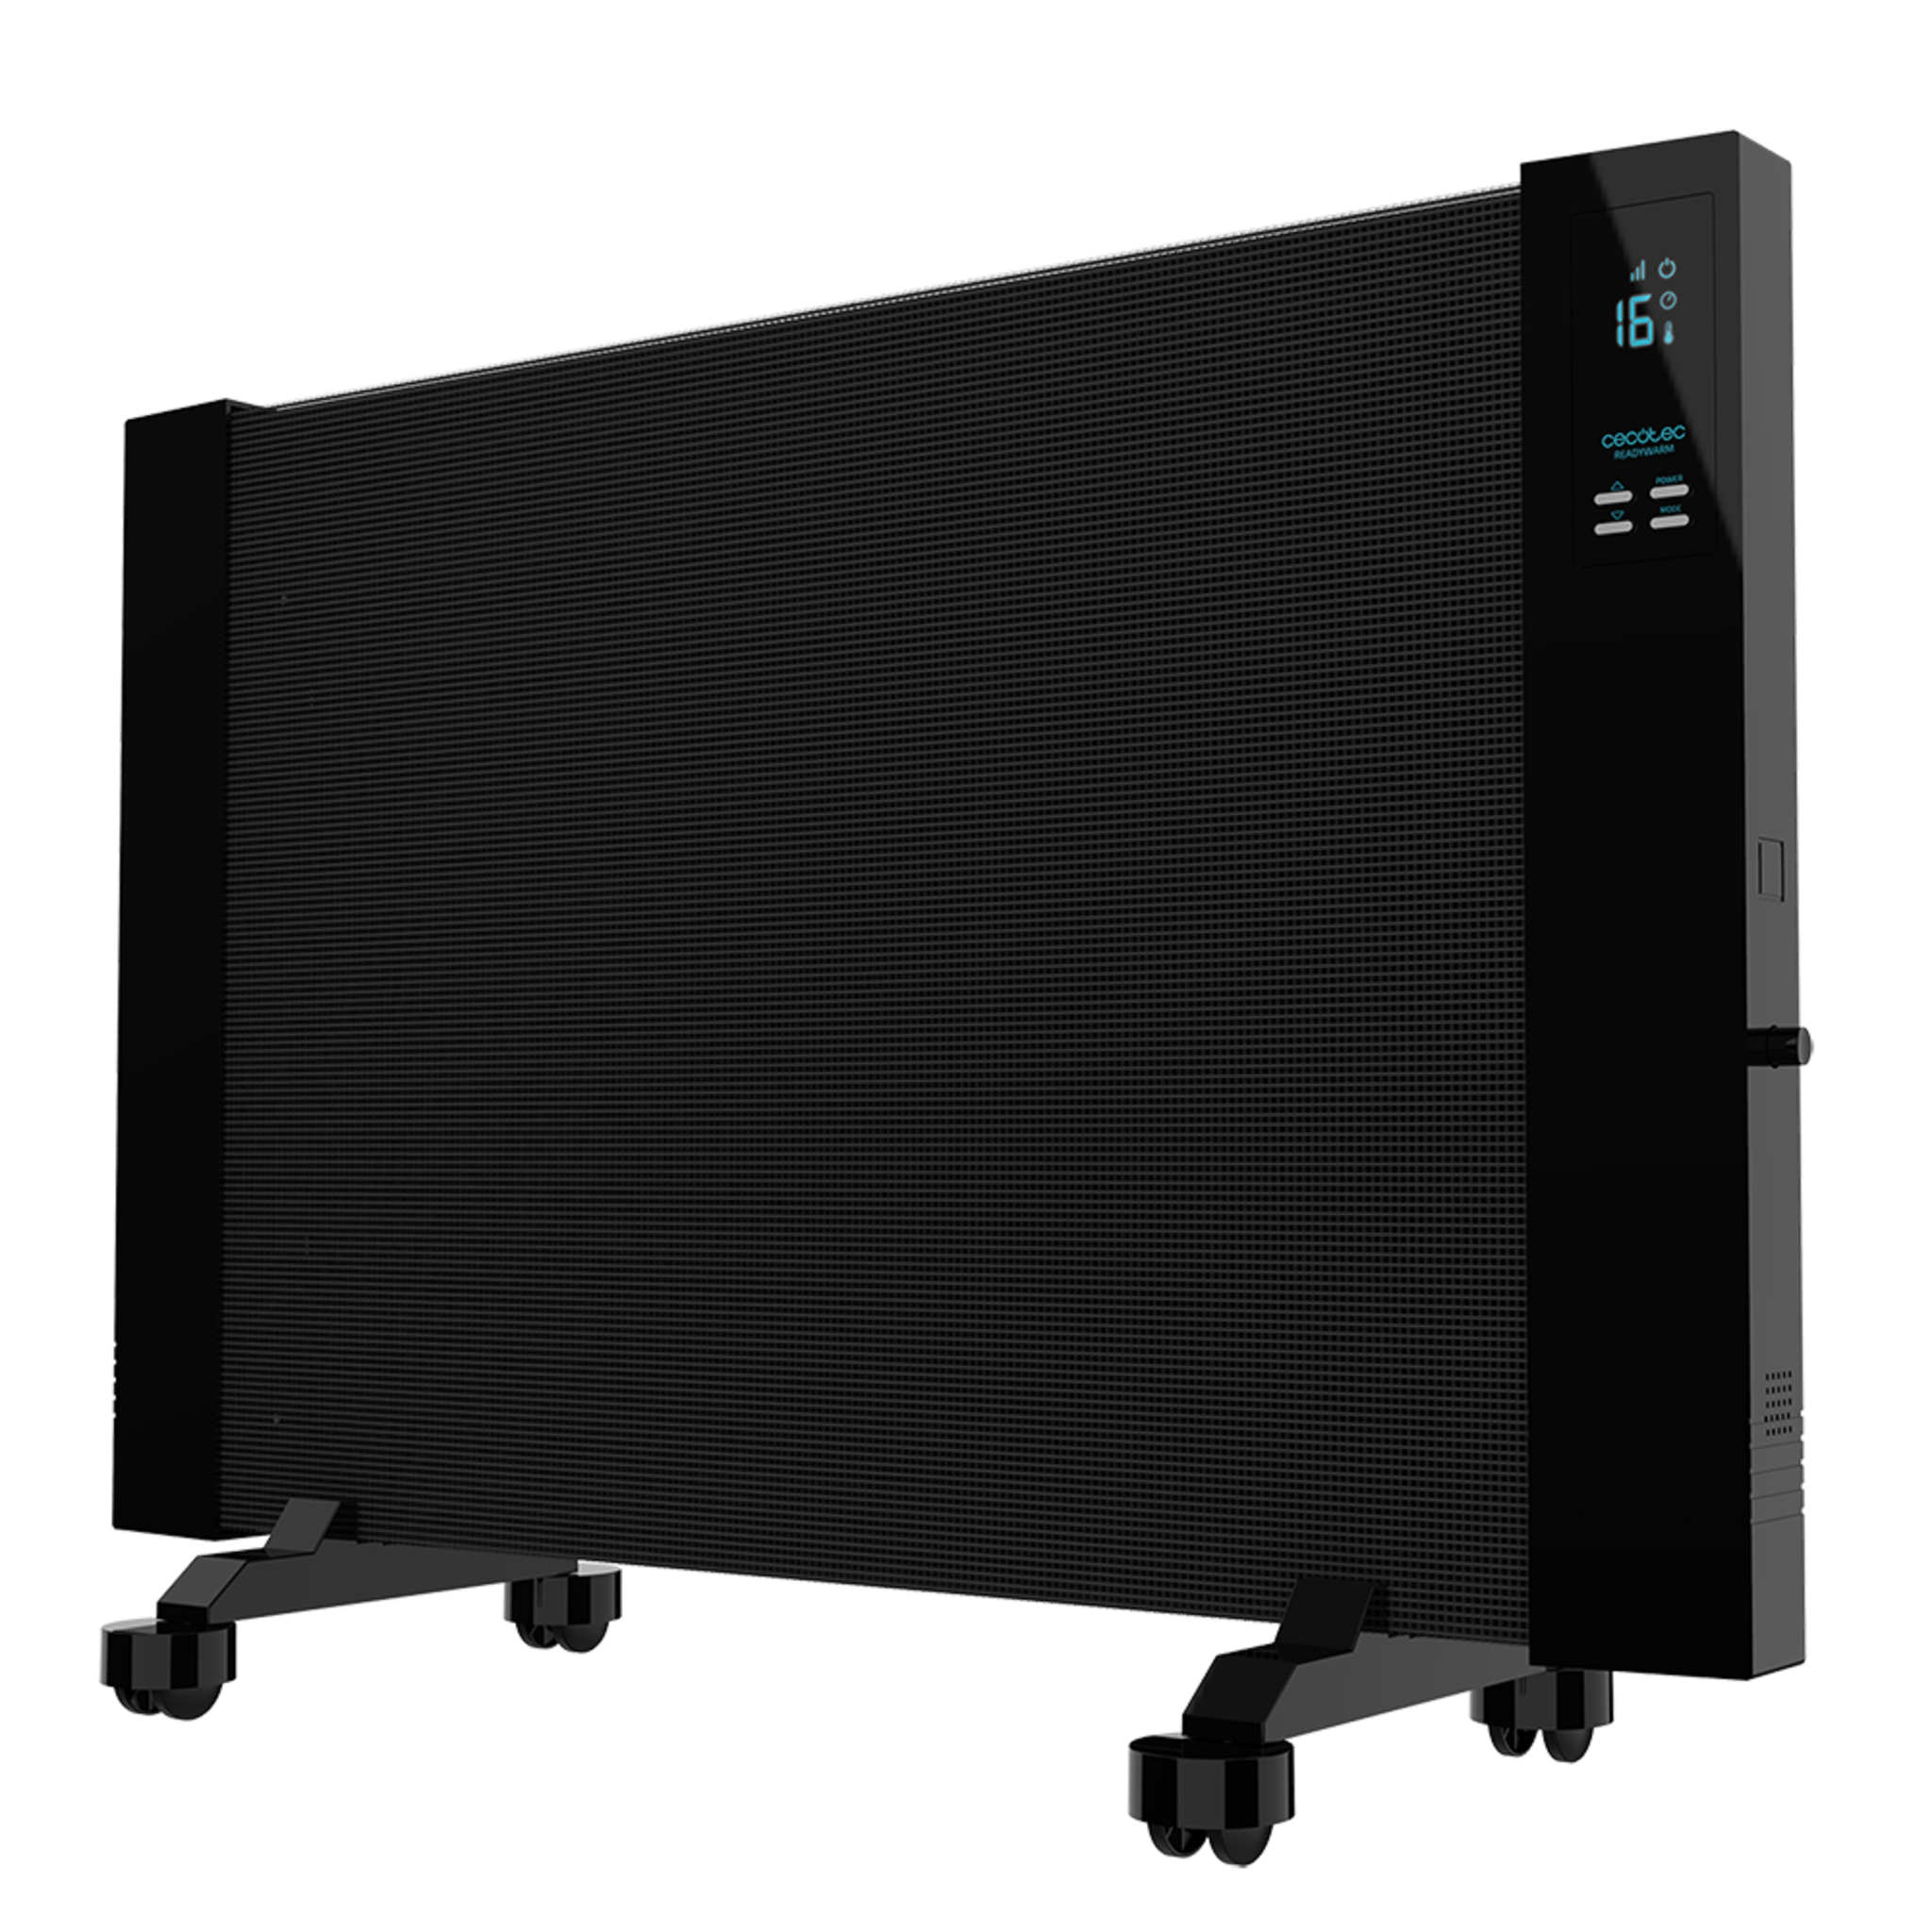 Radiador Eléctrico Bajo Consumo Ready Warm 3100 Smart Now. 2000 W, Pantalla LCD, Temporizador, 2 Modos, Ruedas, Temporizador Regulable, Sistema de Protección, 15 m2